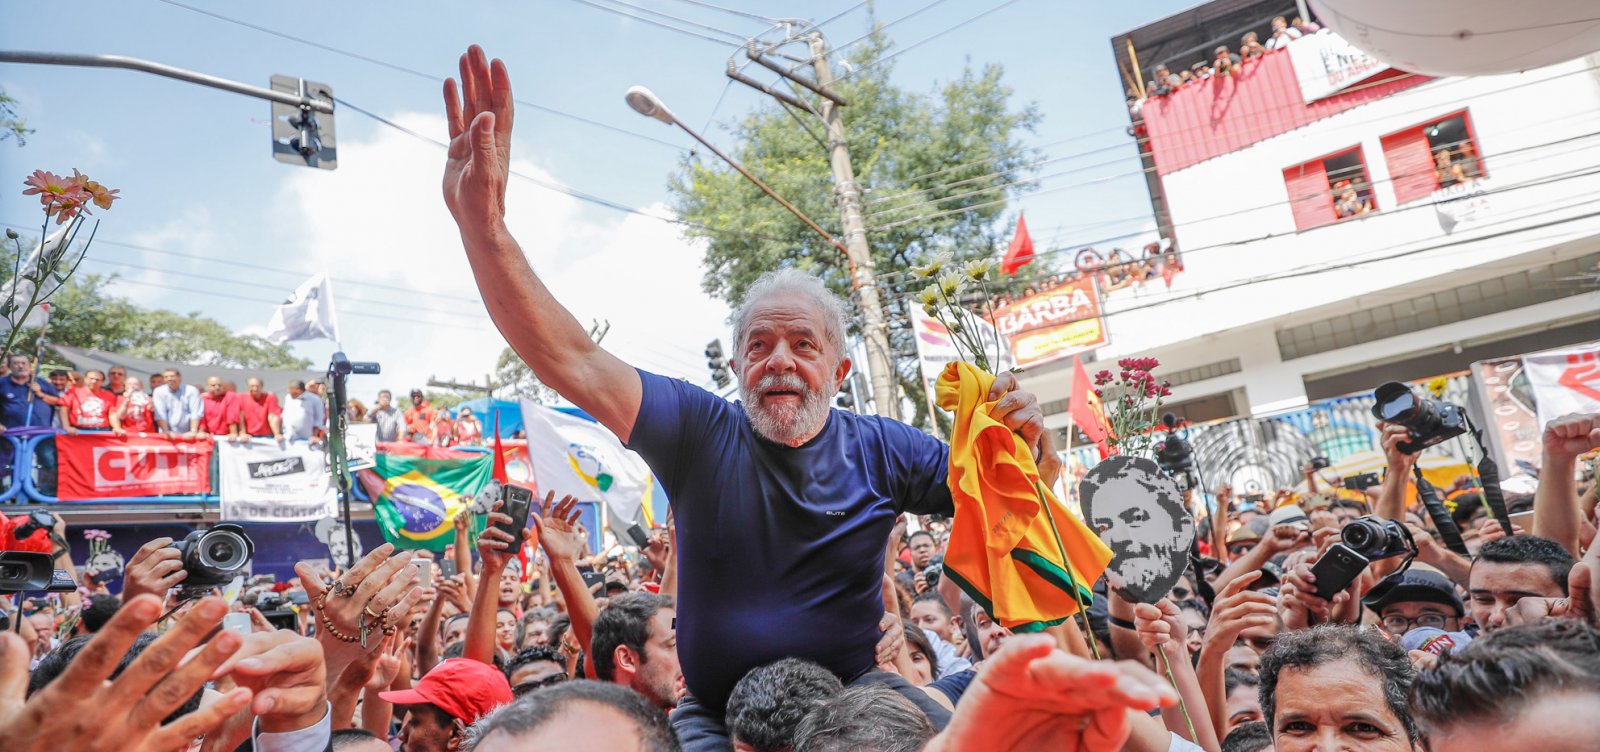 Manifesto assinado por 17 juristas pede liberdade de Lula